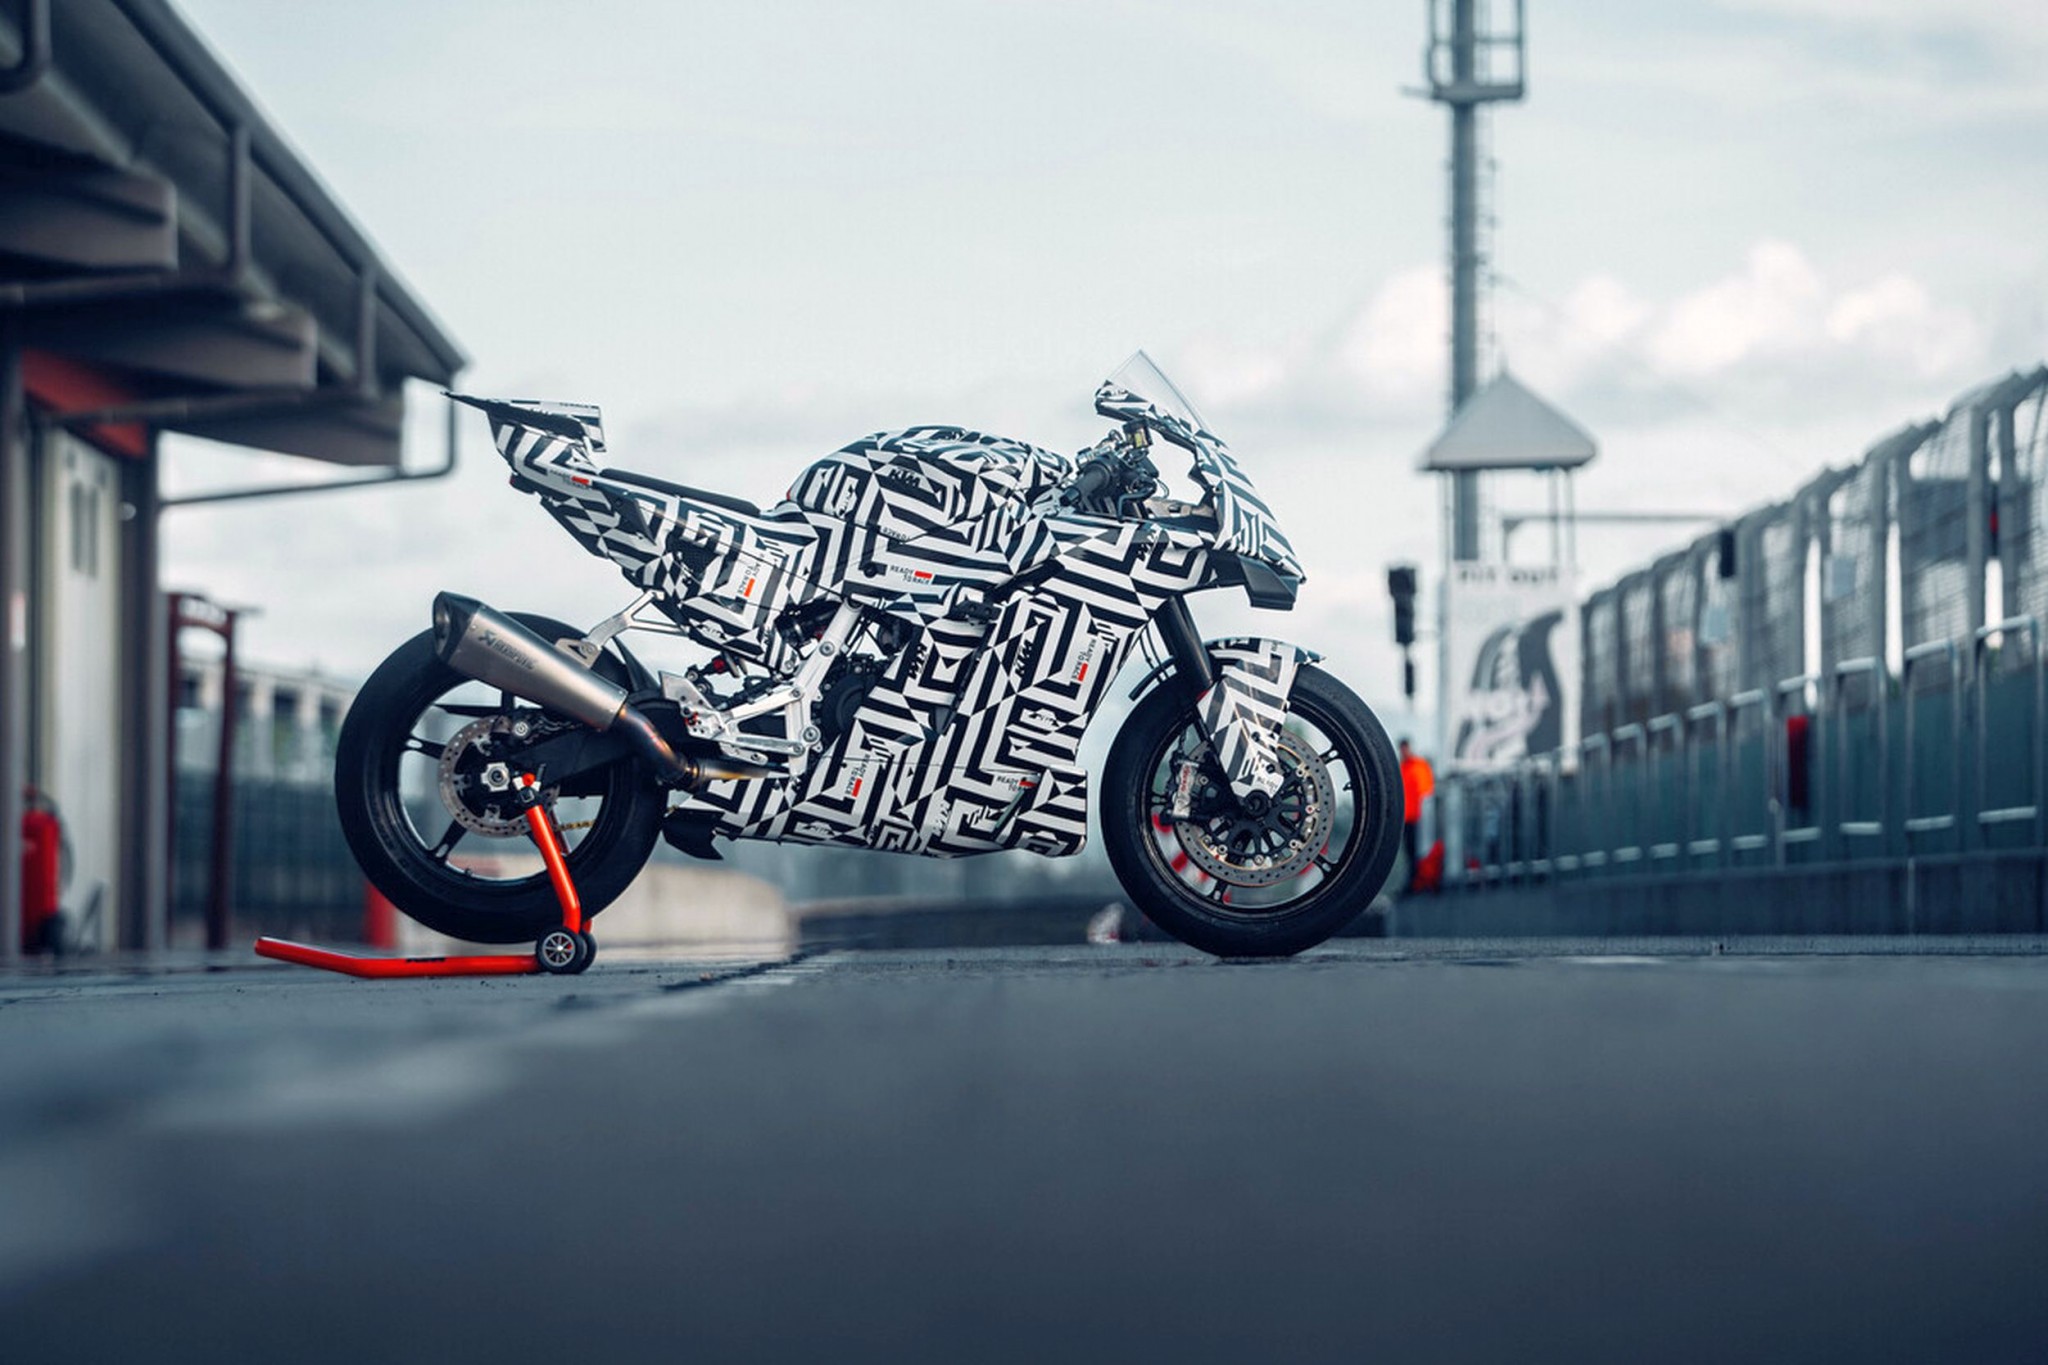 KTM 990 RC R - finalmente a moto desportiva puro-sangue para a estrada! - Imagem 1